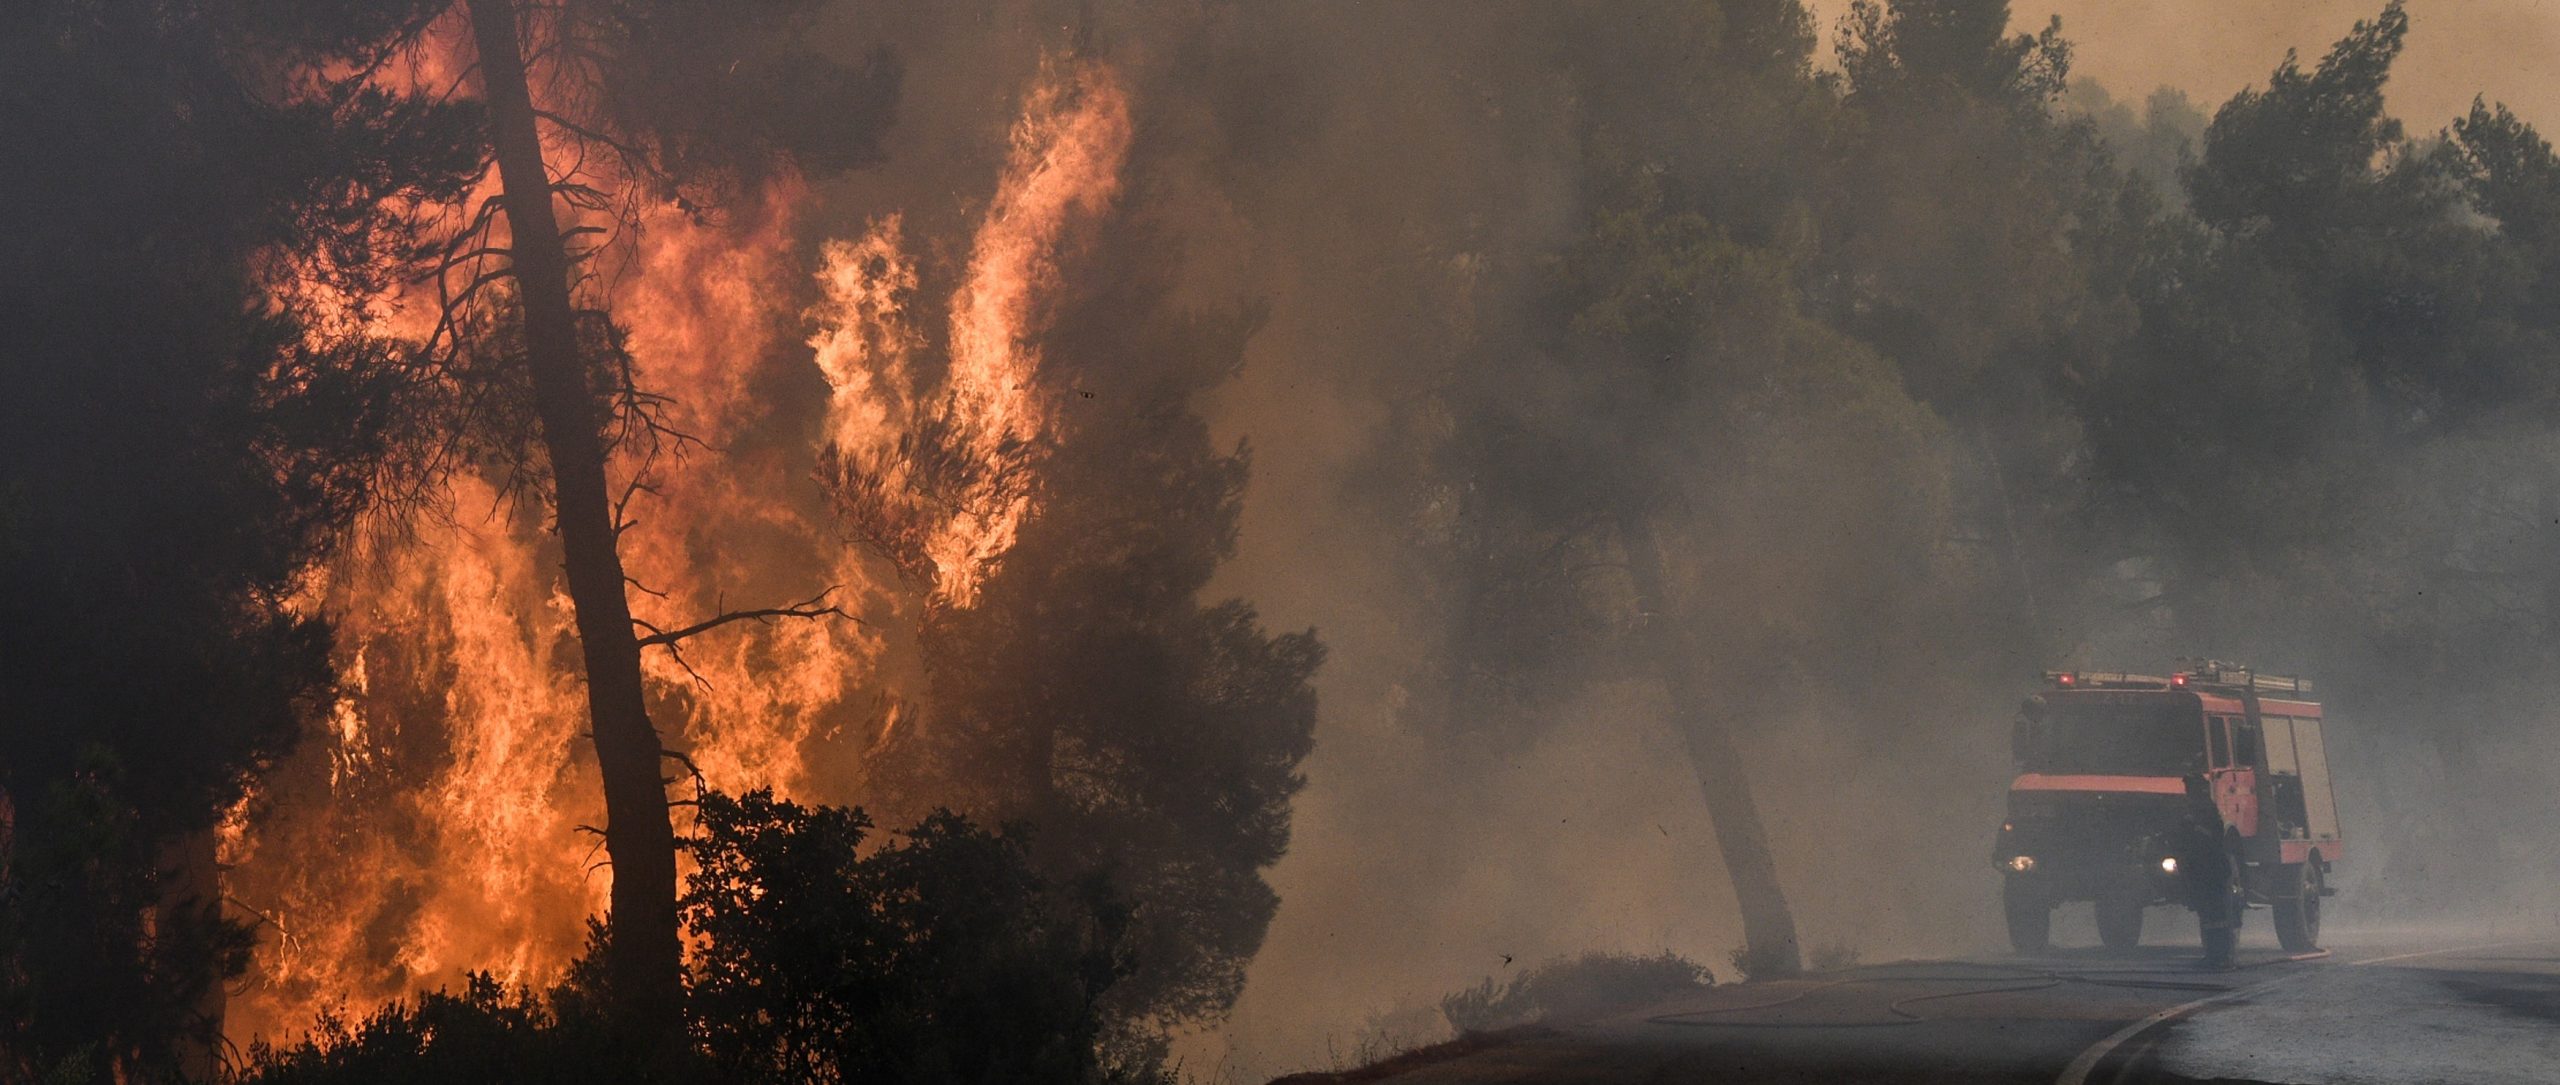 Πυρκαγιά στο Ευπάλιο Φωκίδας – Εκκενώθηκαν 2 χωριά